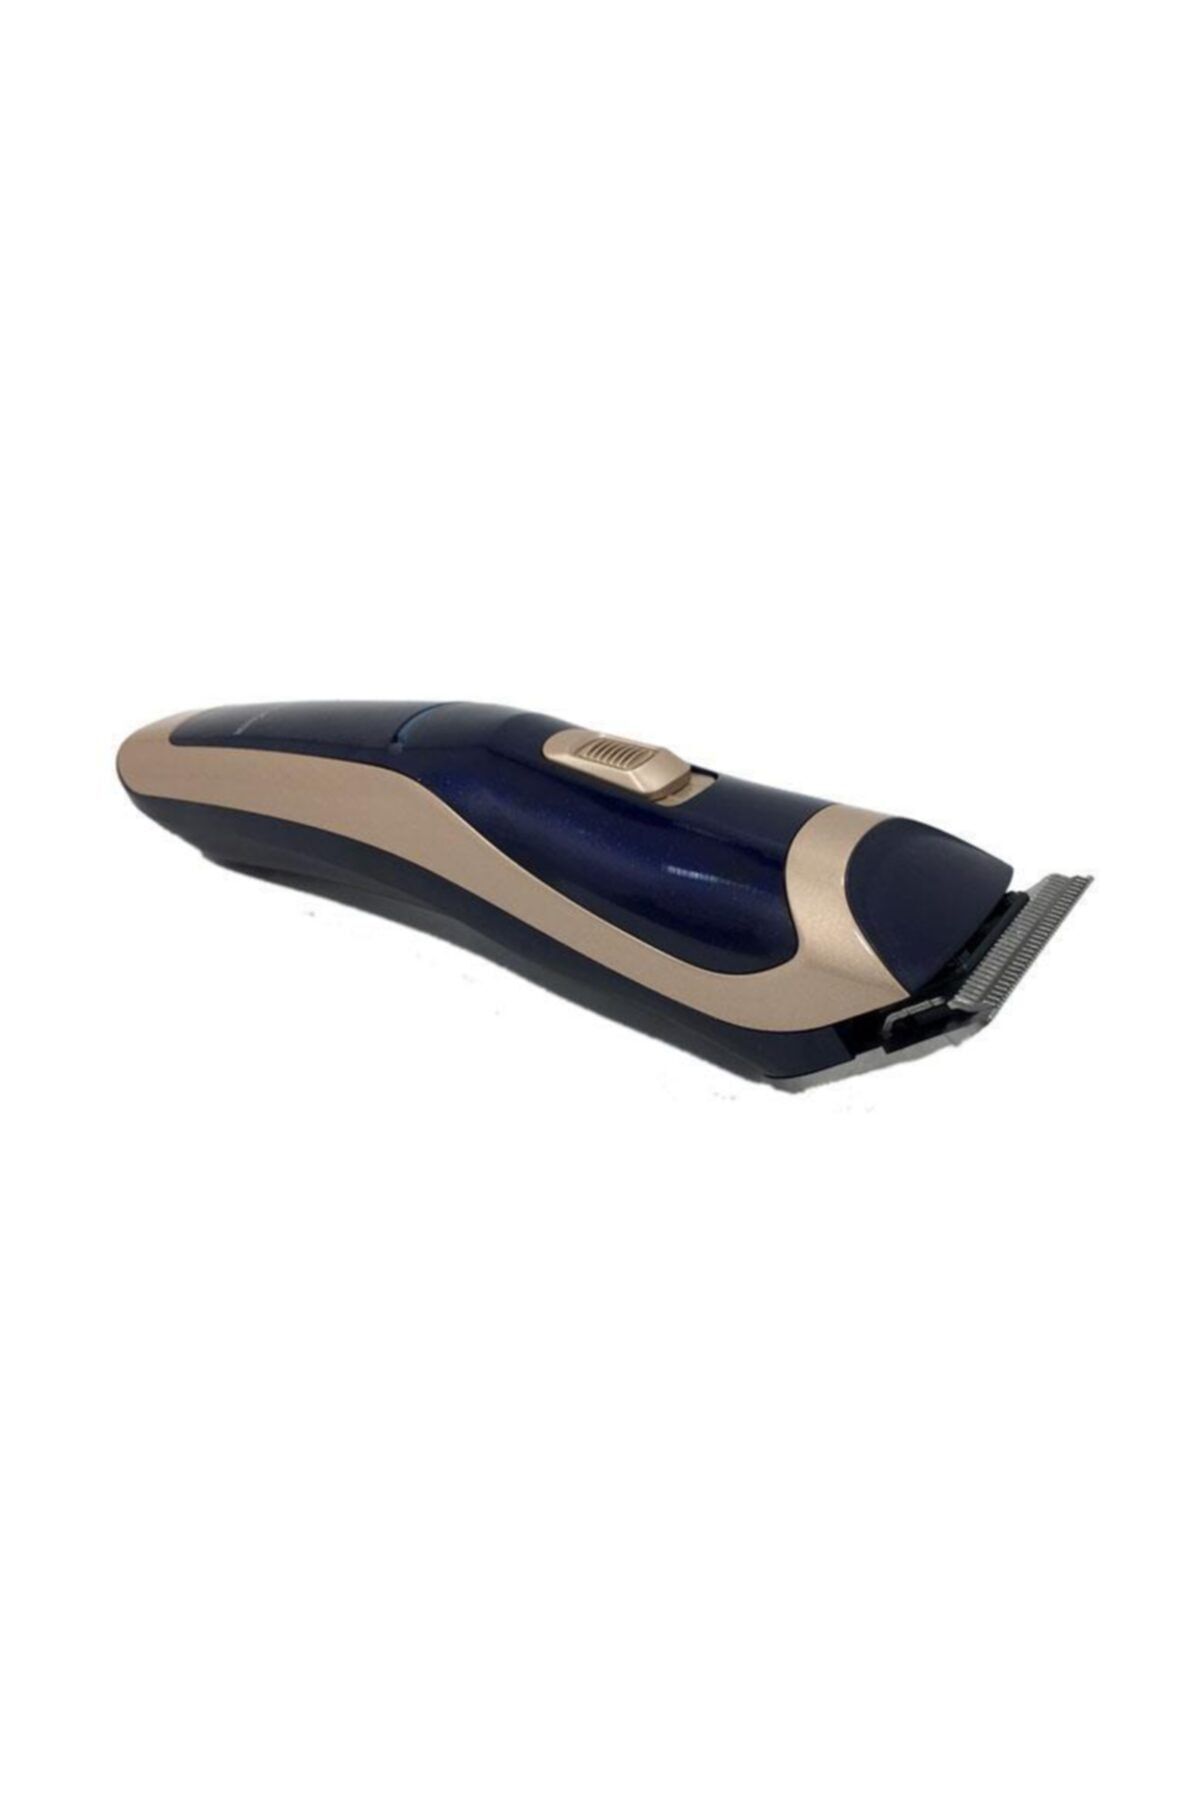 welpower 0.2 mm Ince Kesim Bıçaklı Hijyenik Şarjlı Saç Sakal Tıraş Makinesi Wp-7100